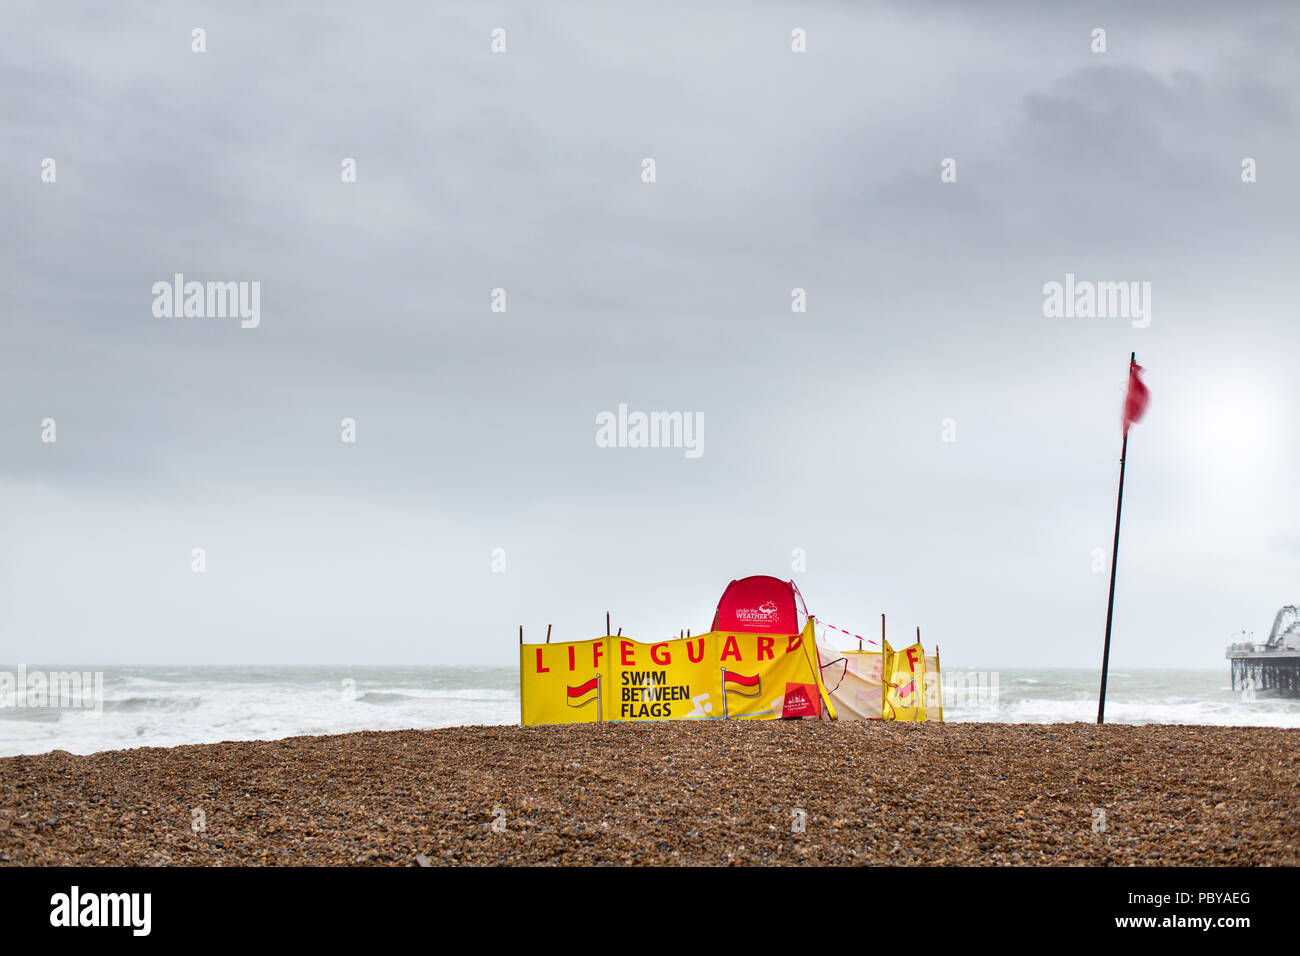 Vue d'une base de sauveteur sur la plage de Brighton. Le drapeau rouge est battant et avise les personnes de nager entre les drapeaux mais c'est trop accidenté pour nager dans la mer. Banque D'Images